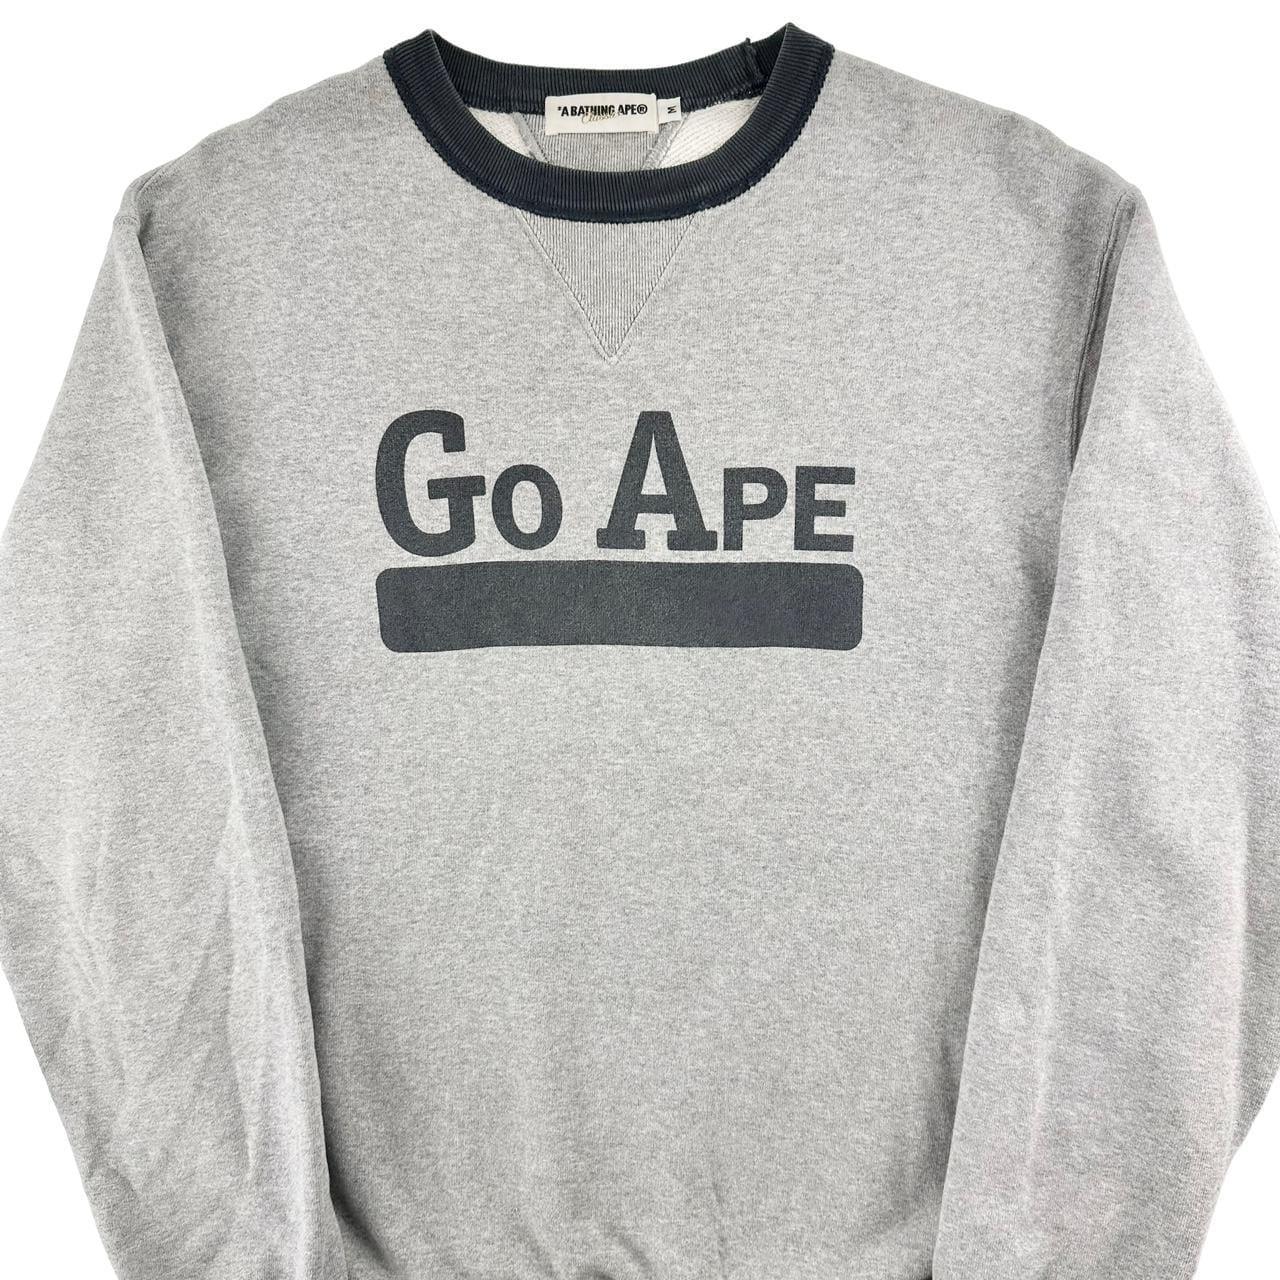 Vintage Bape go ape jumper sweatshirt size M - Known Source